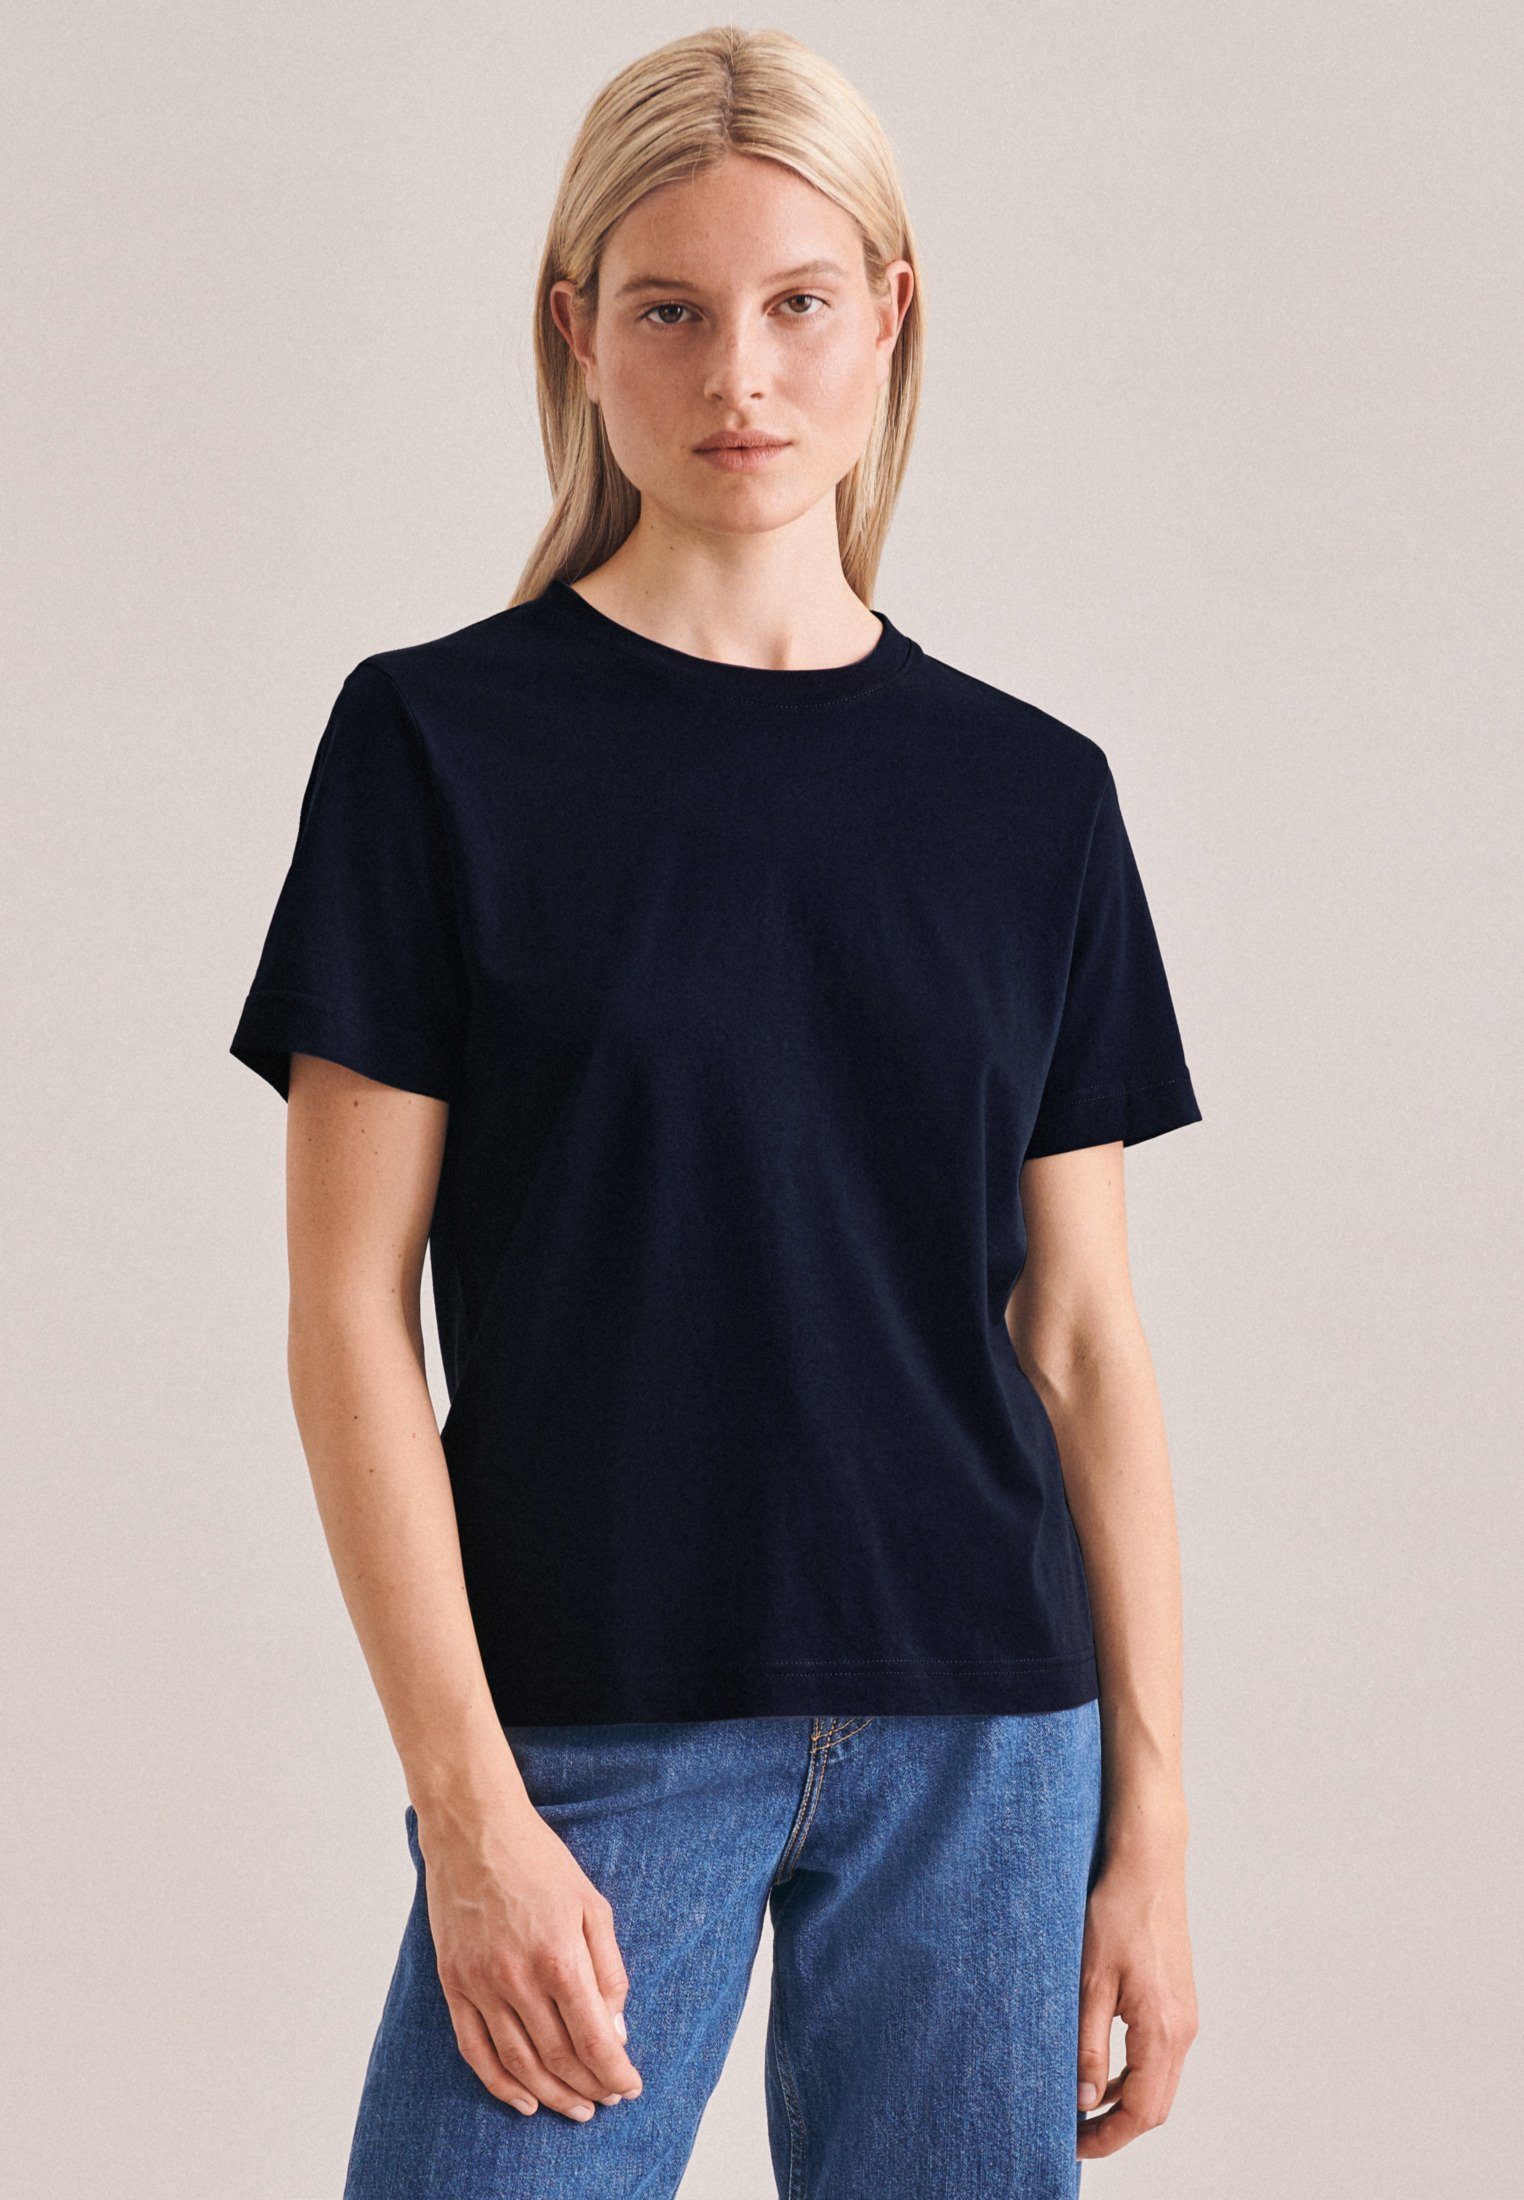 seidensticker T-Shirt Schwarze Rose Kurzarm Rundhals Material: 100% Baumwolle Uni